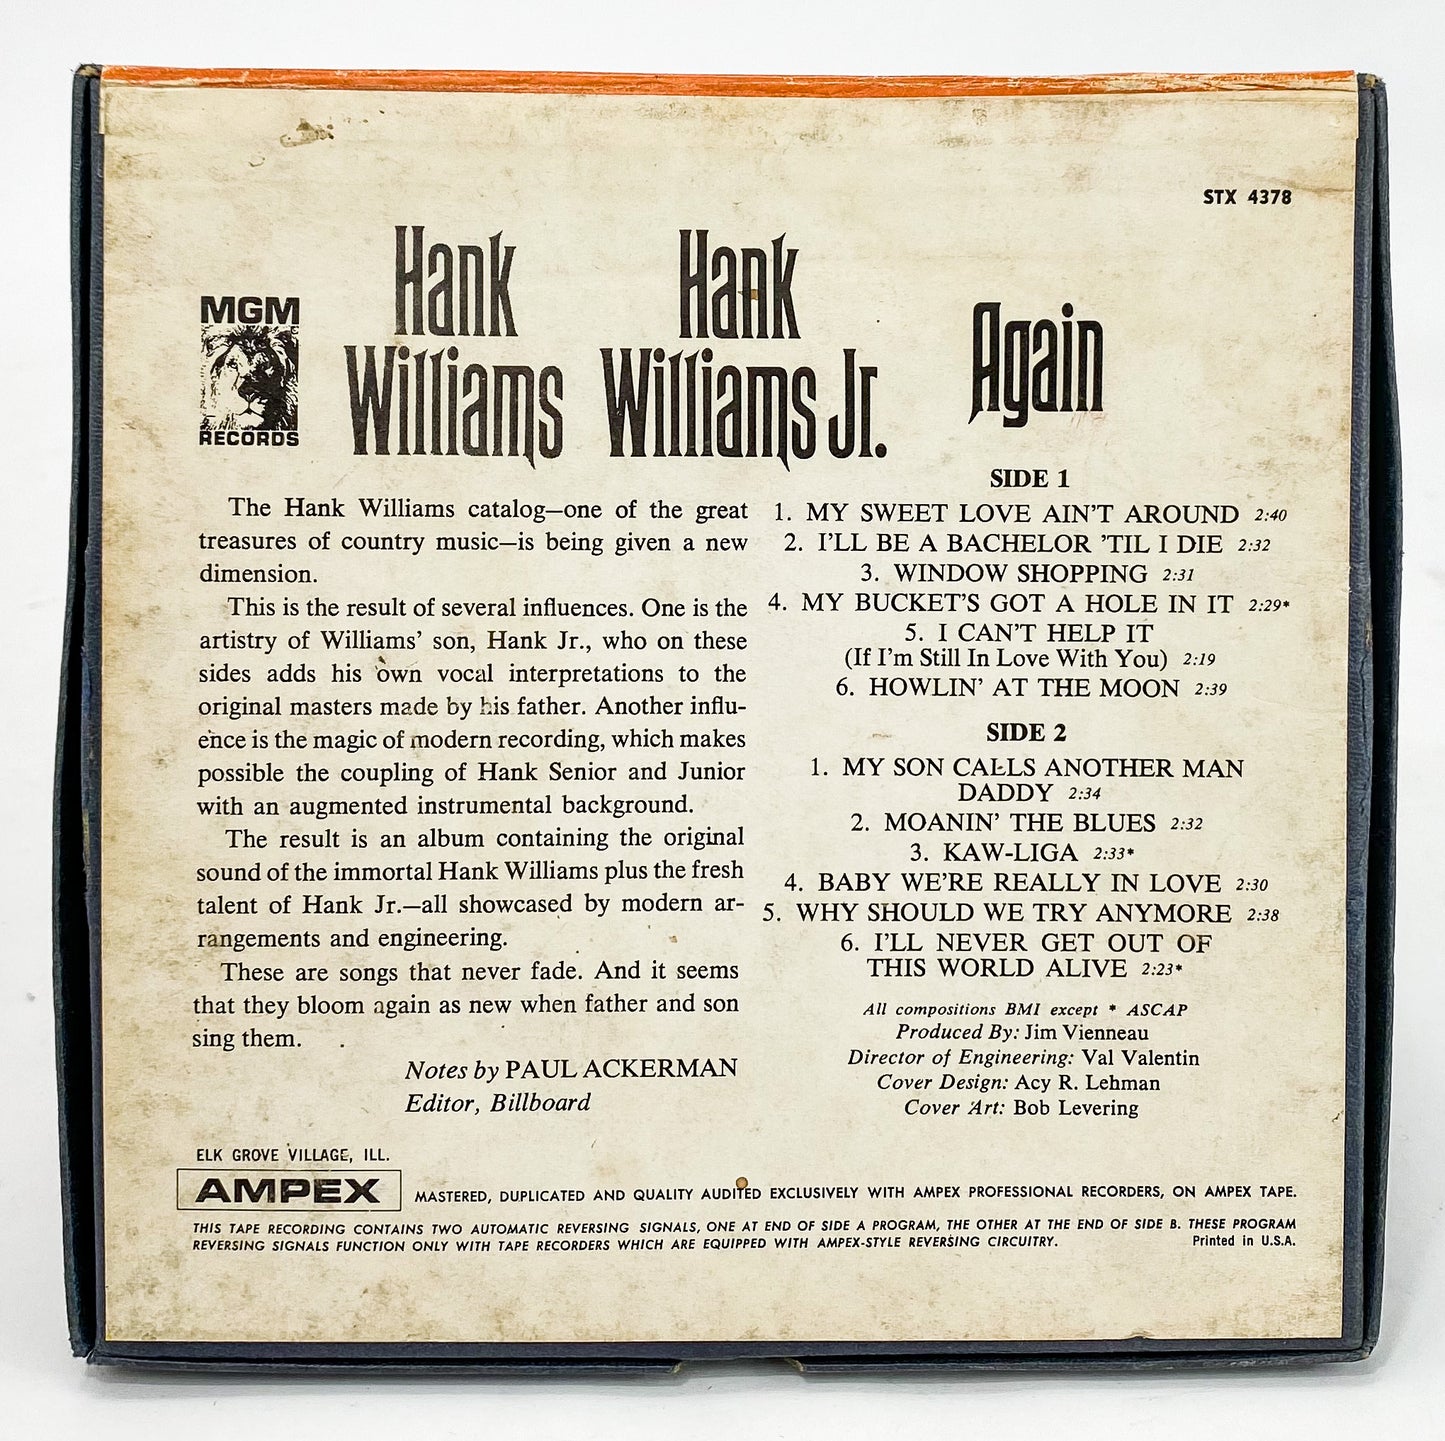 Hank Williams Hank Williams Jr. Again Reel to Reel Tape 7 1/2 IPS MGM